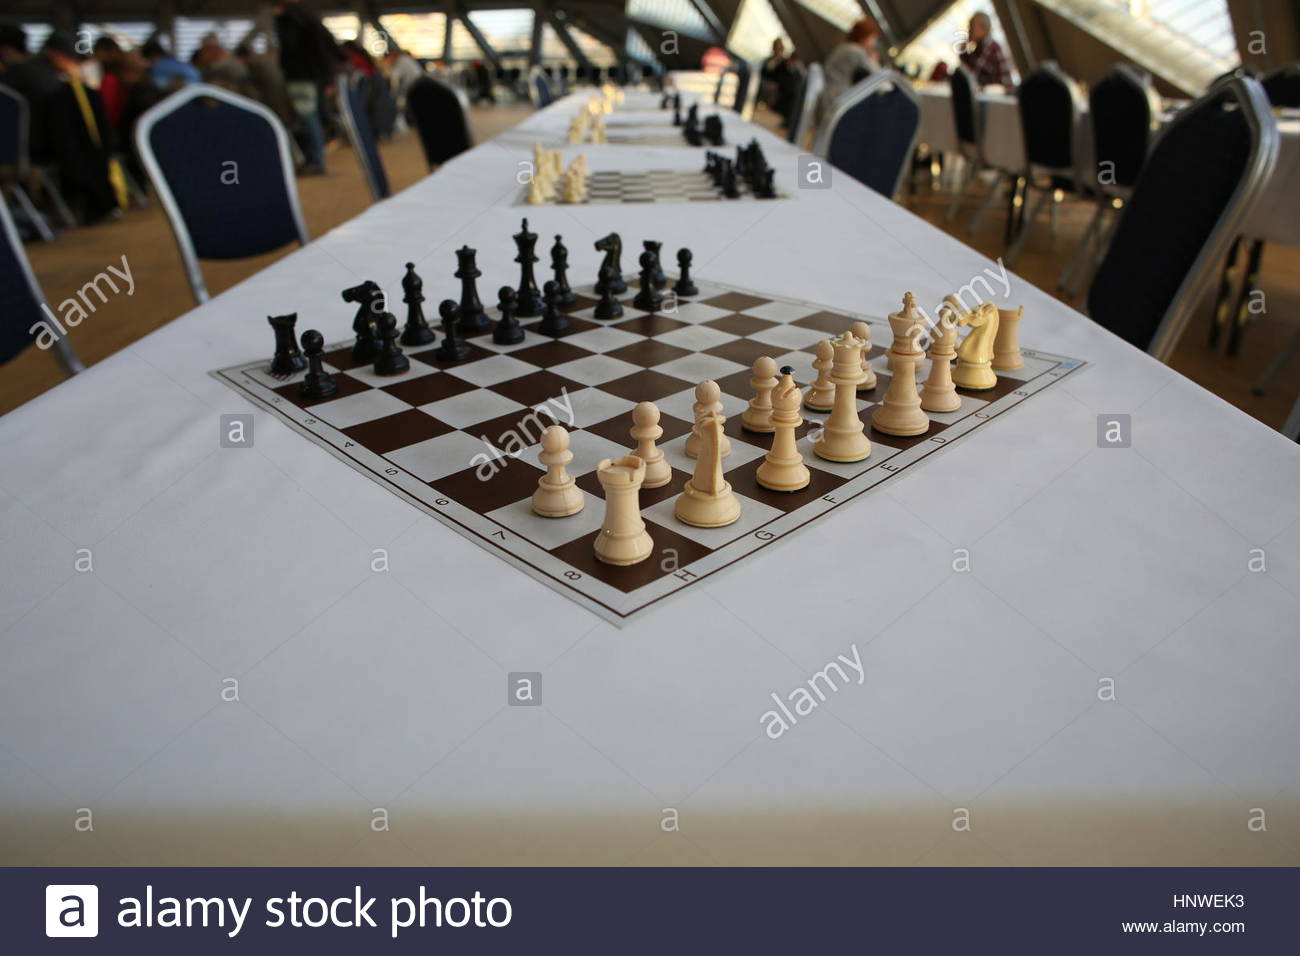 Un jeu d'échecs sur une table avant une compétition avec chiffres blancs en premier plan Banque D'Images